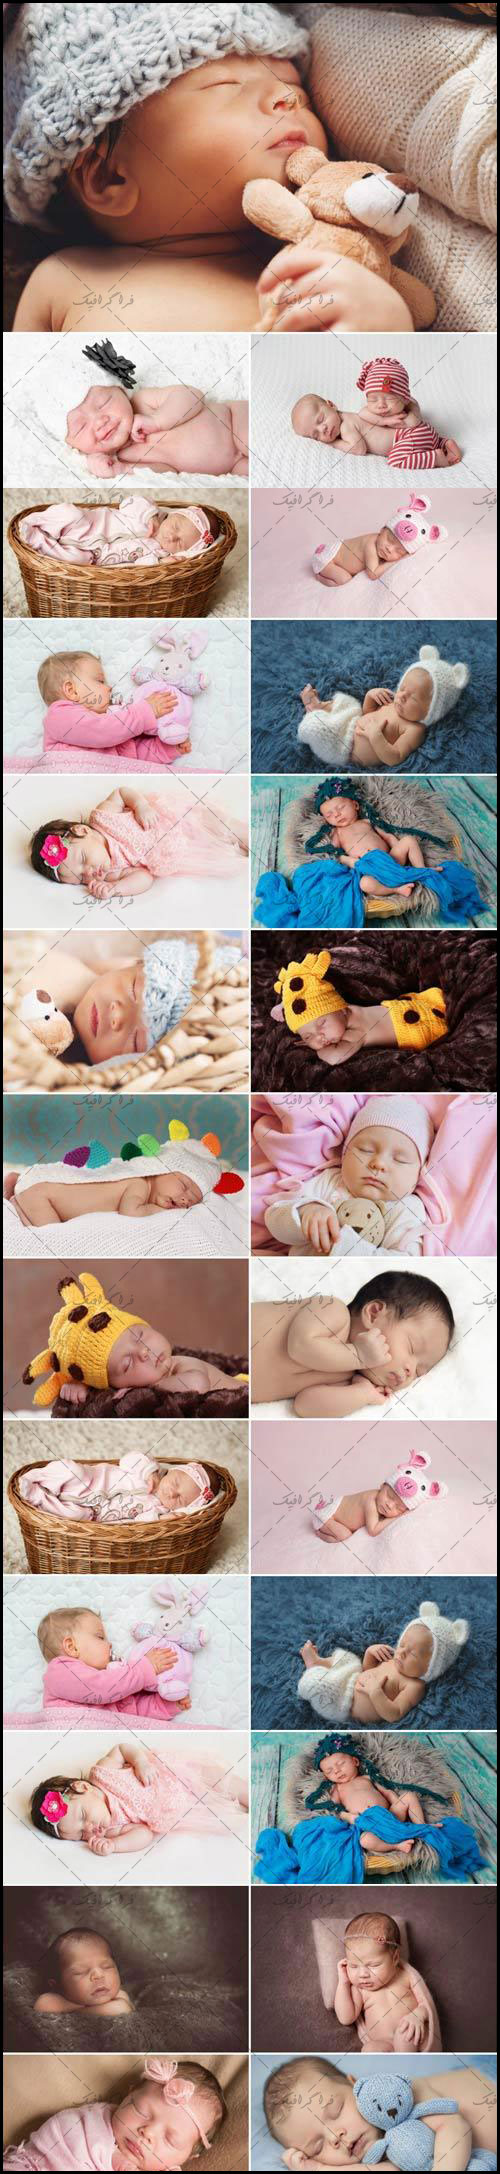 دانلود تصاویر استوک نوزاد خوابیده بامزه -  